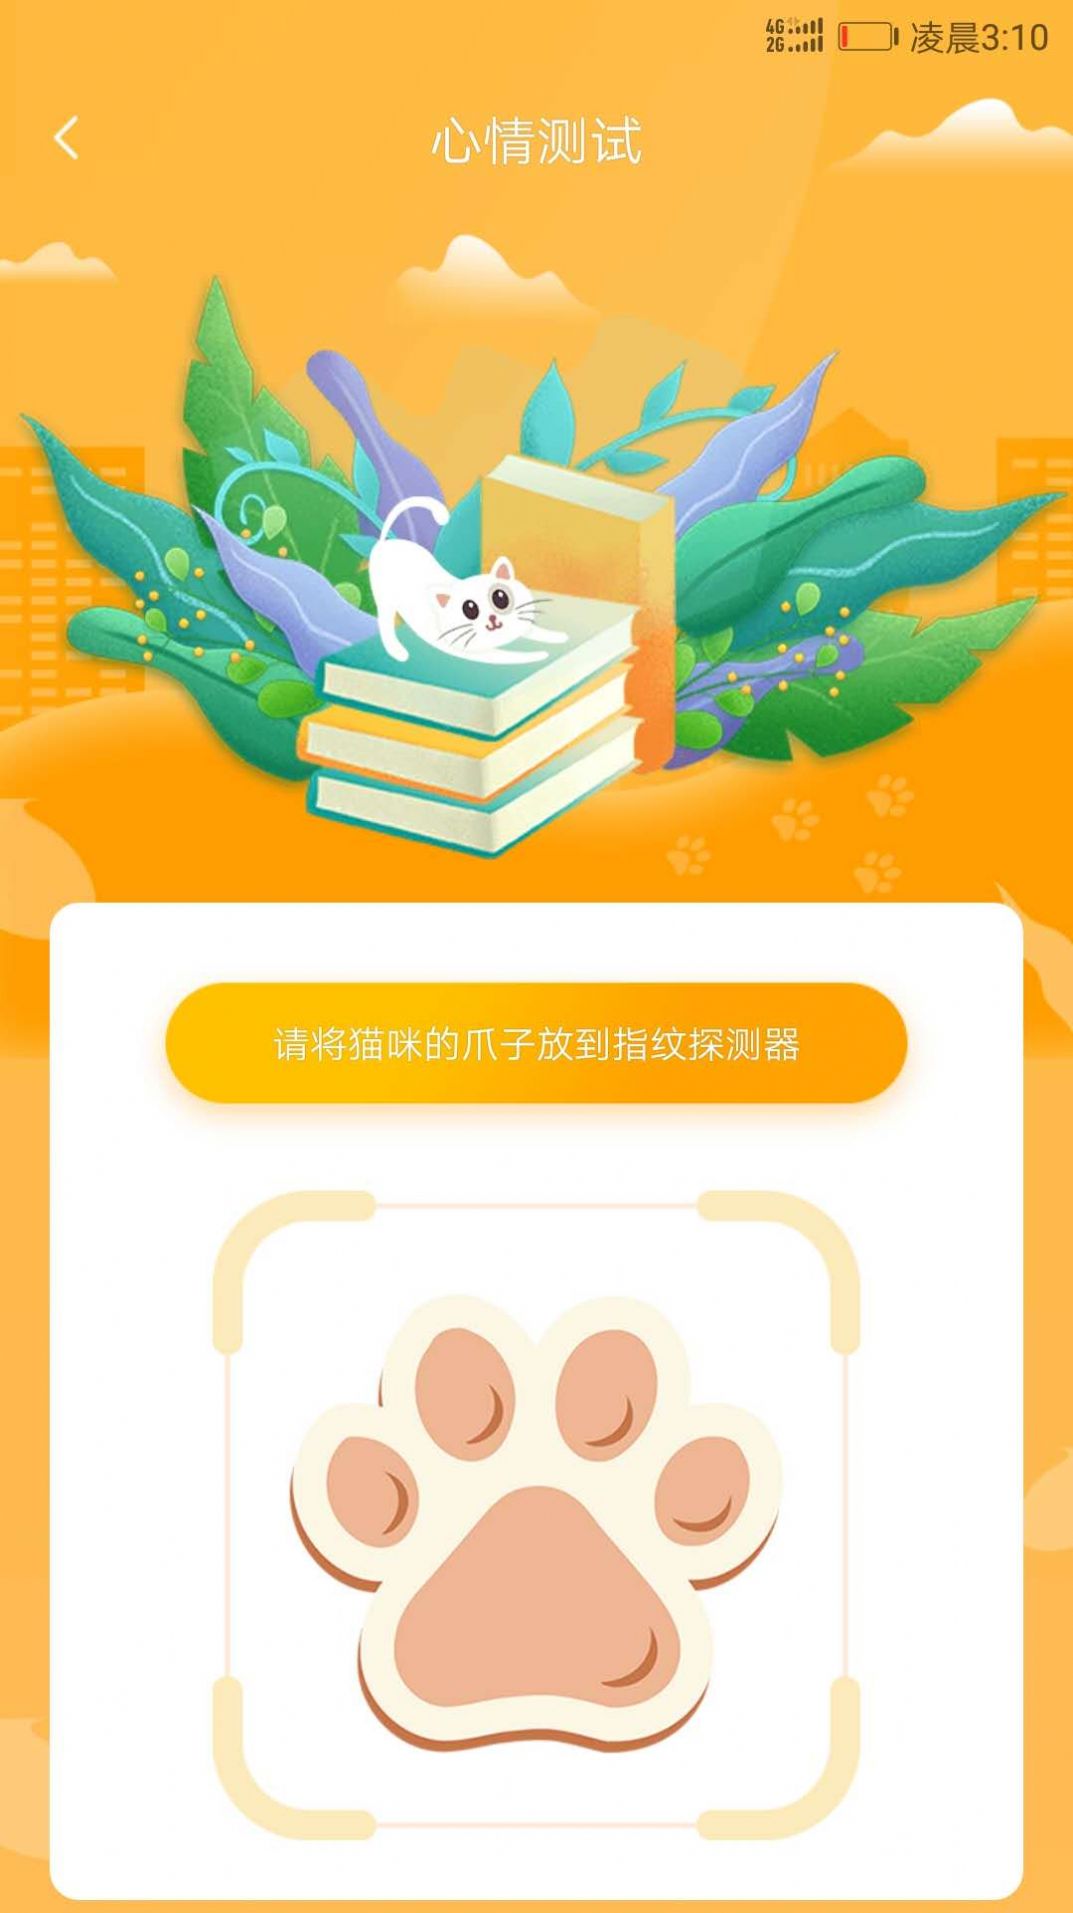 狗语人狗动物翻译器app图2